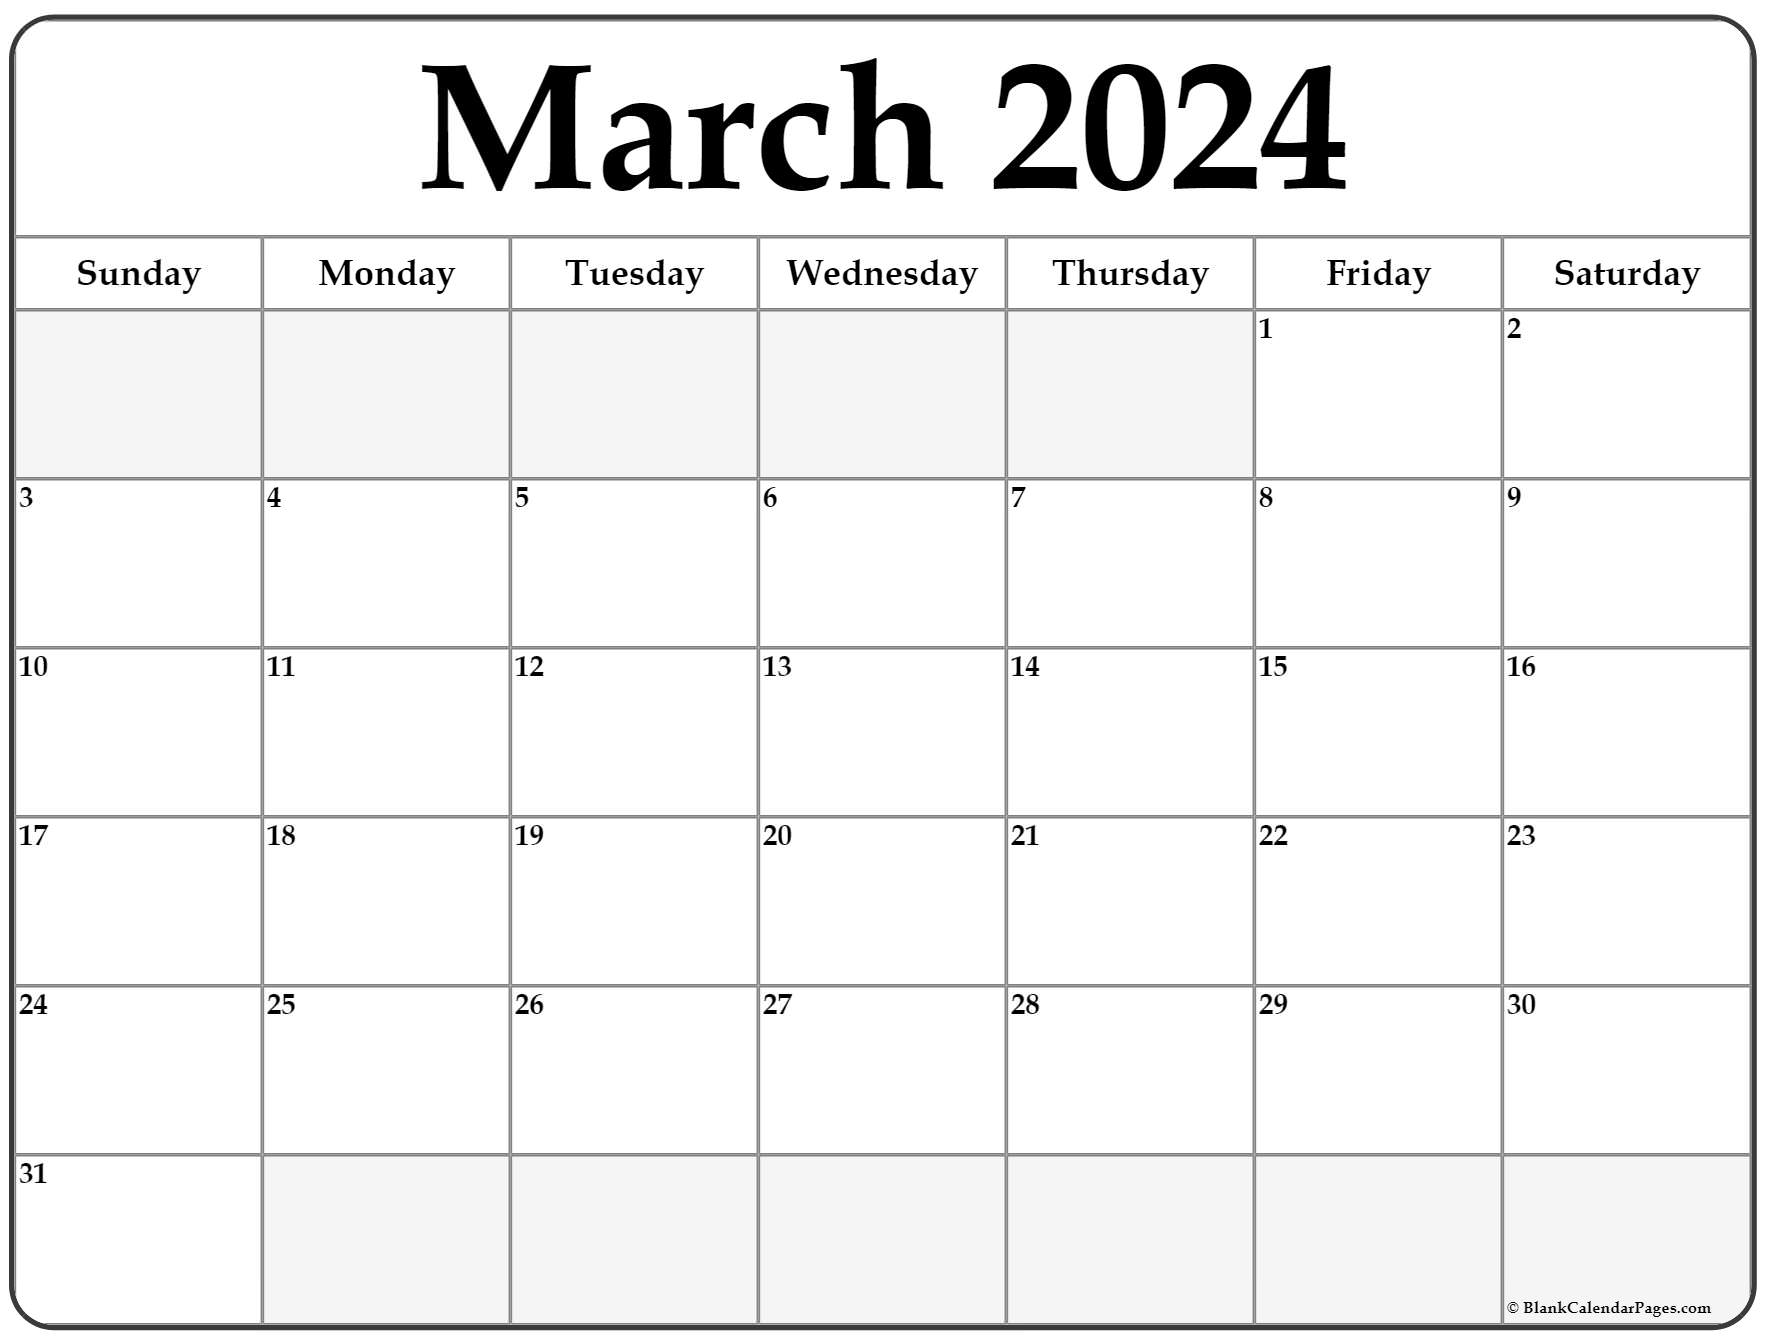 Mar 2022 Calendar Printable March 2022 Calendar | Free Printable Calendar Templates